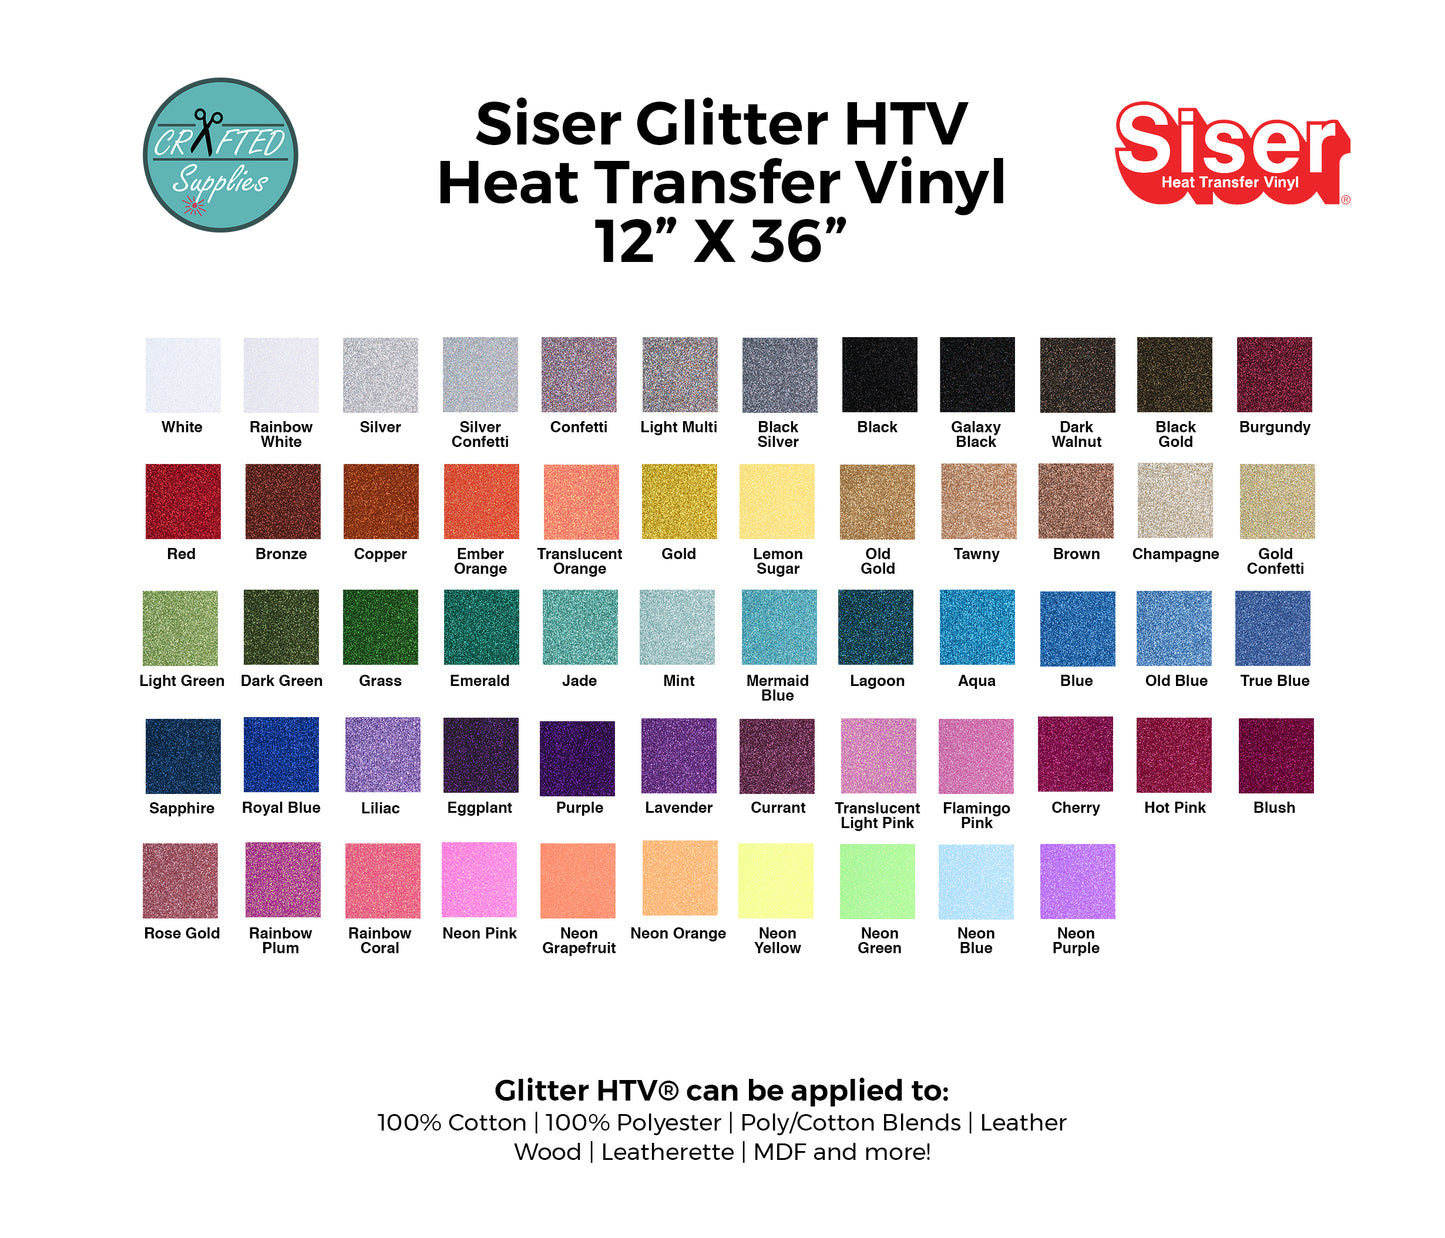 Siser Glitter HTV, Heat Transfer Vinyl Sheets, Siser HTV, Glitter